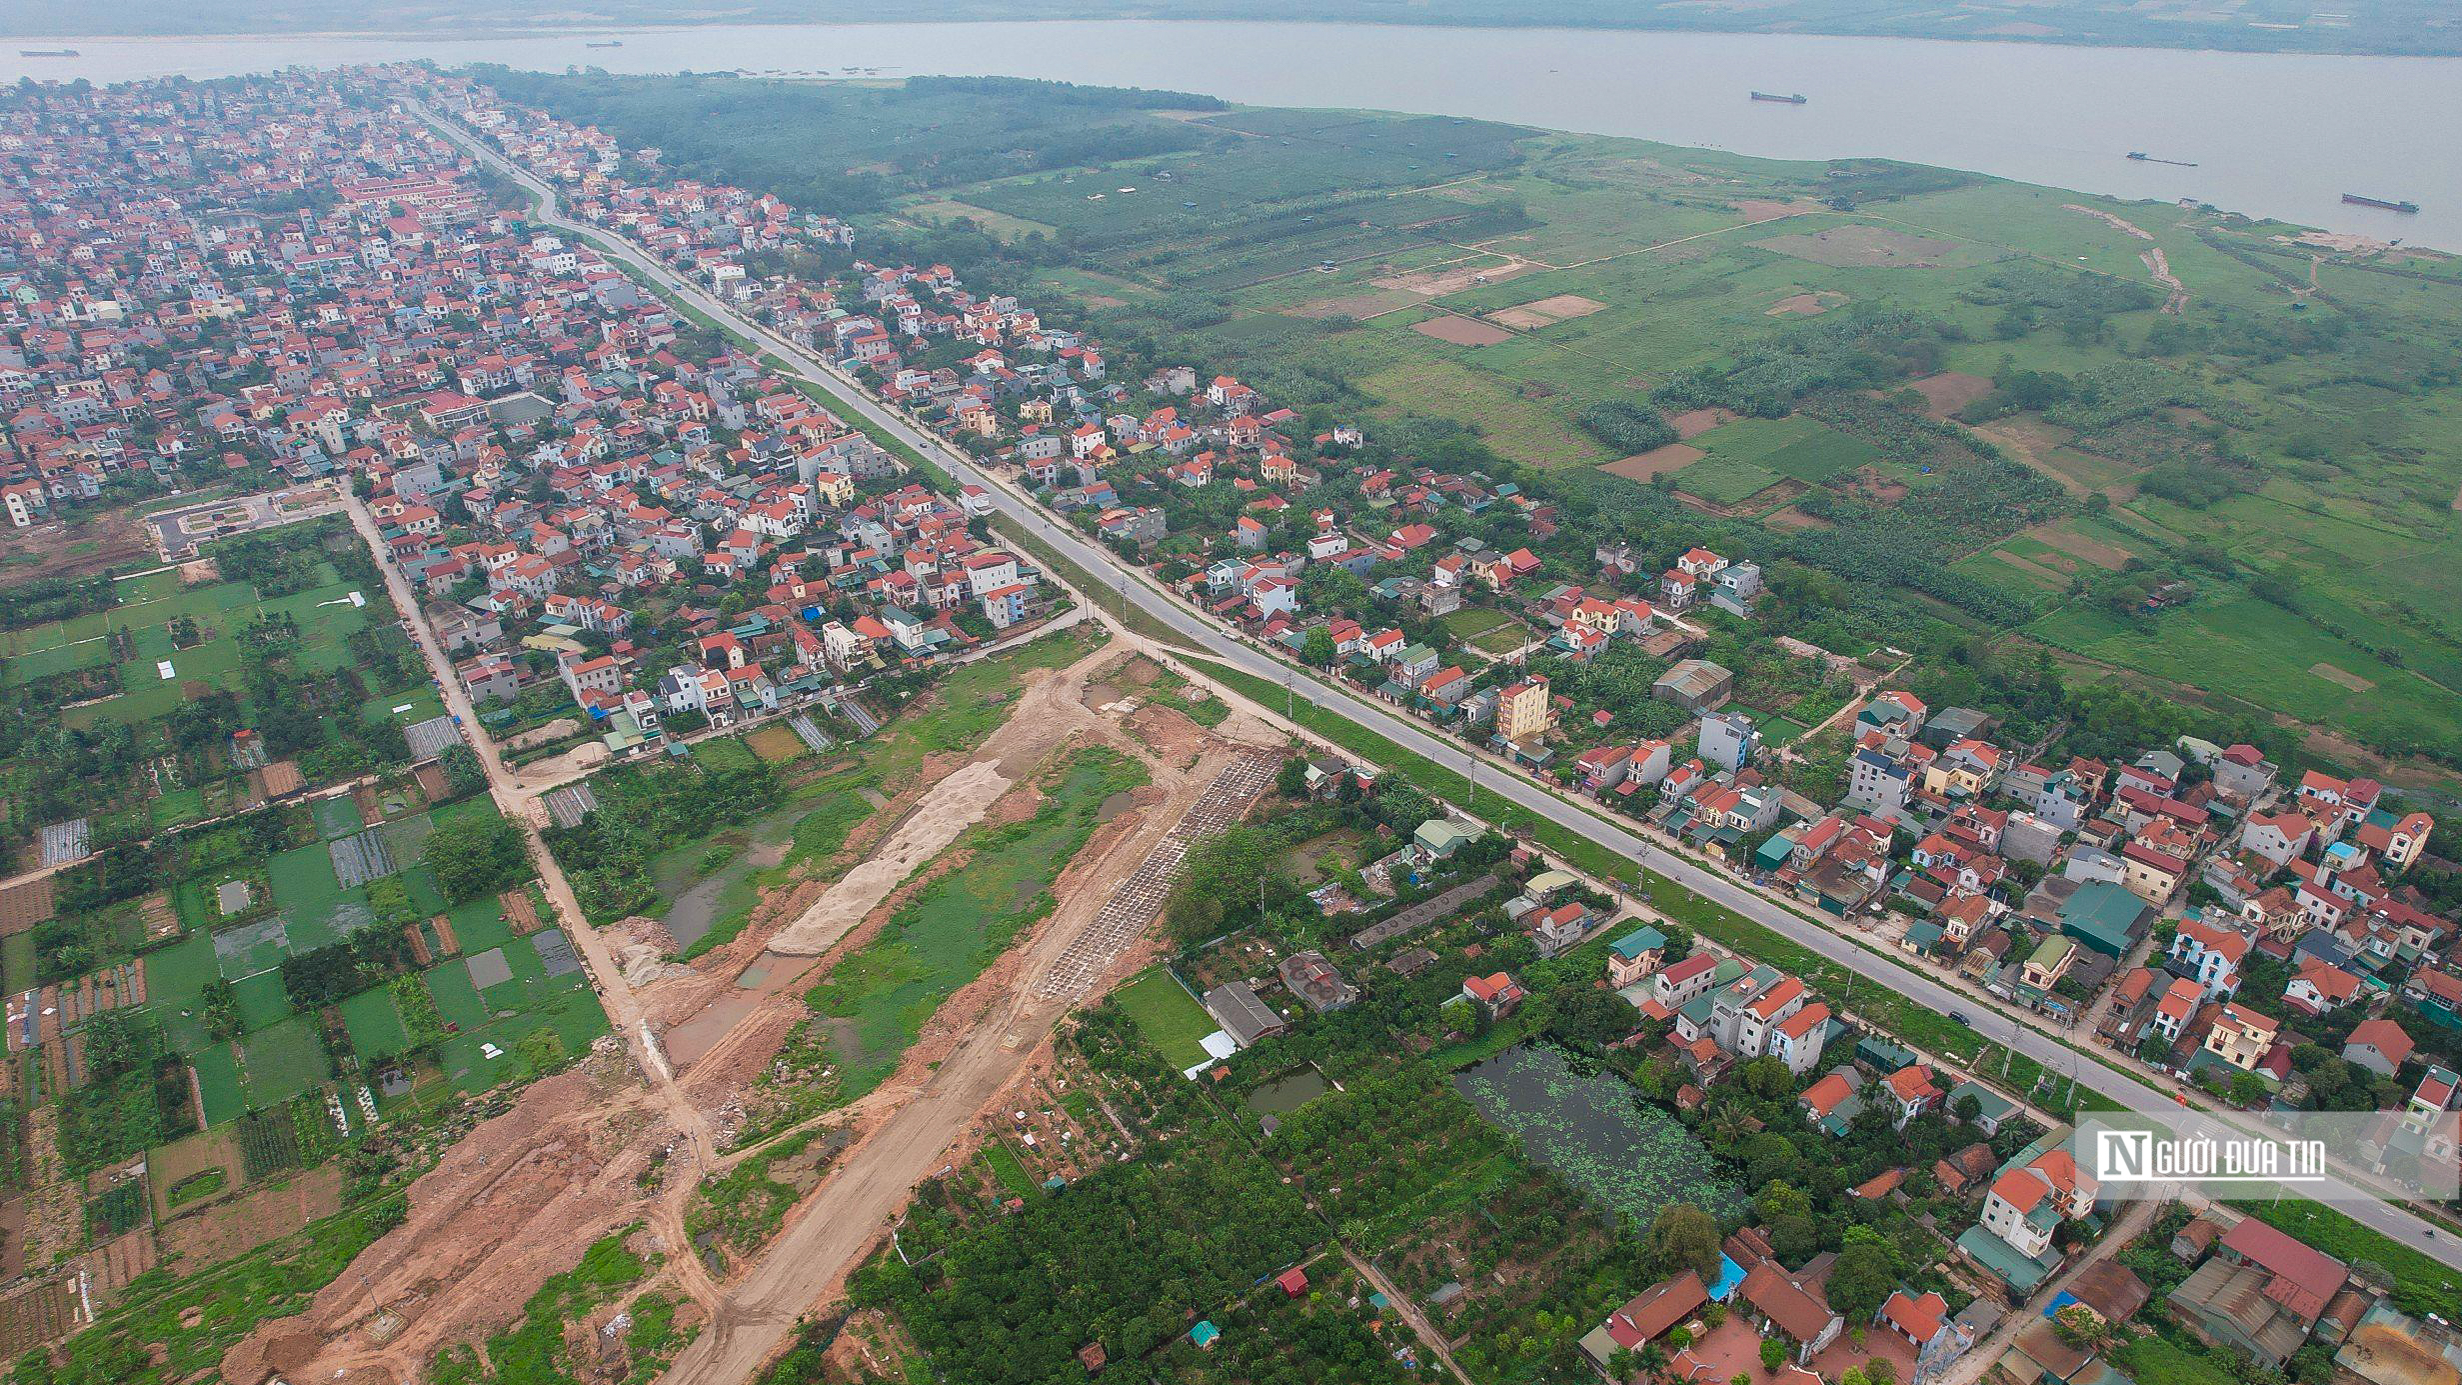 Bất động sản - Hà Nội: Khu vực xây cầu Hồng Hà trị giá gần 10.000 tỷ đồng (Hình 3).